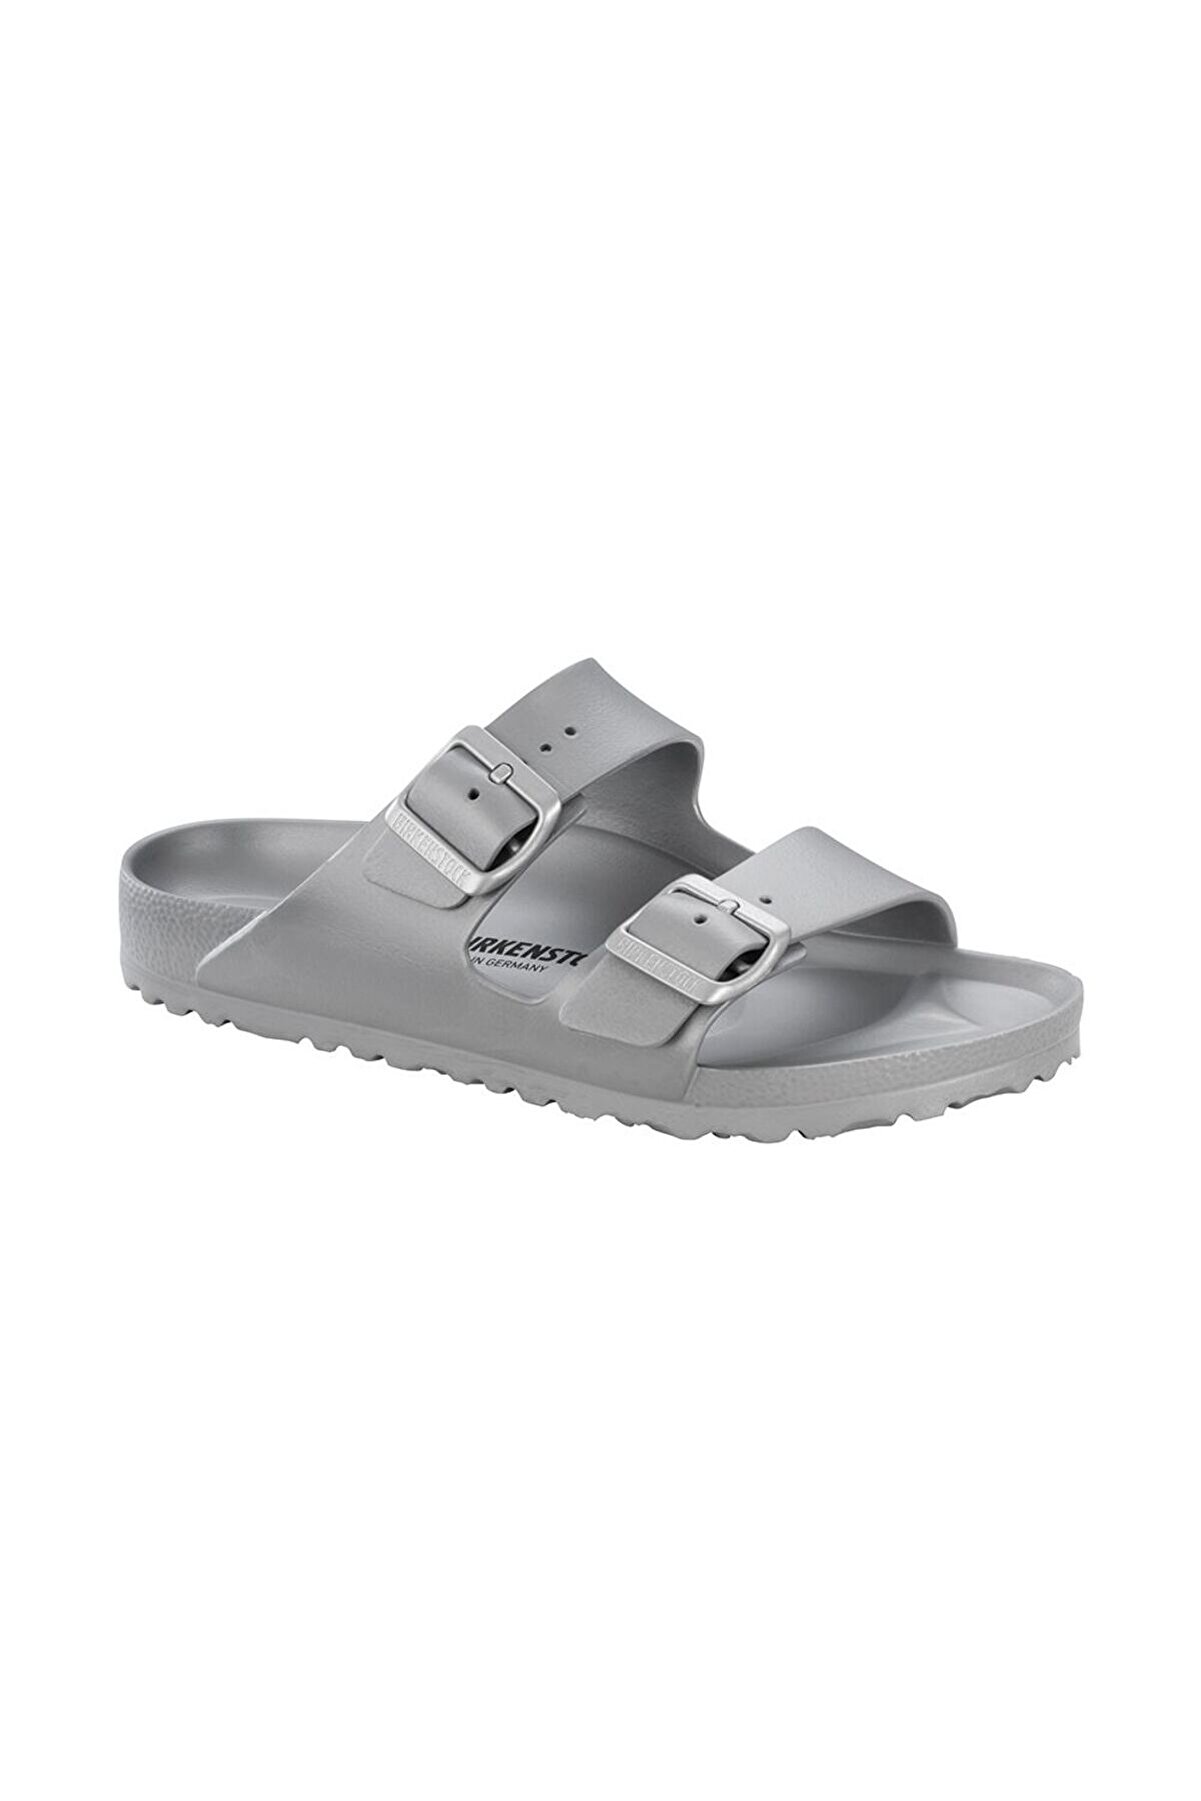 Birkenstock Kadın Metallic Silver Kadın Terlik/sandalet 1003491-metallic S